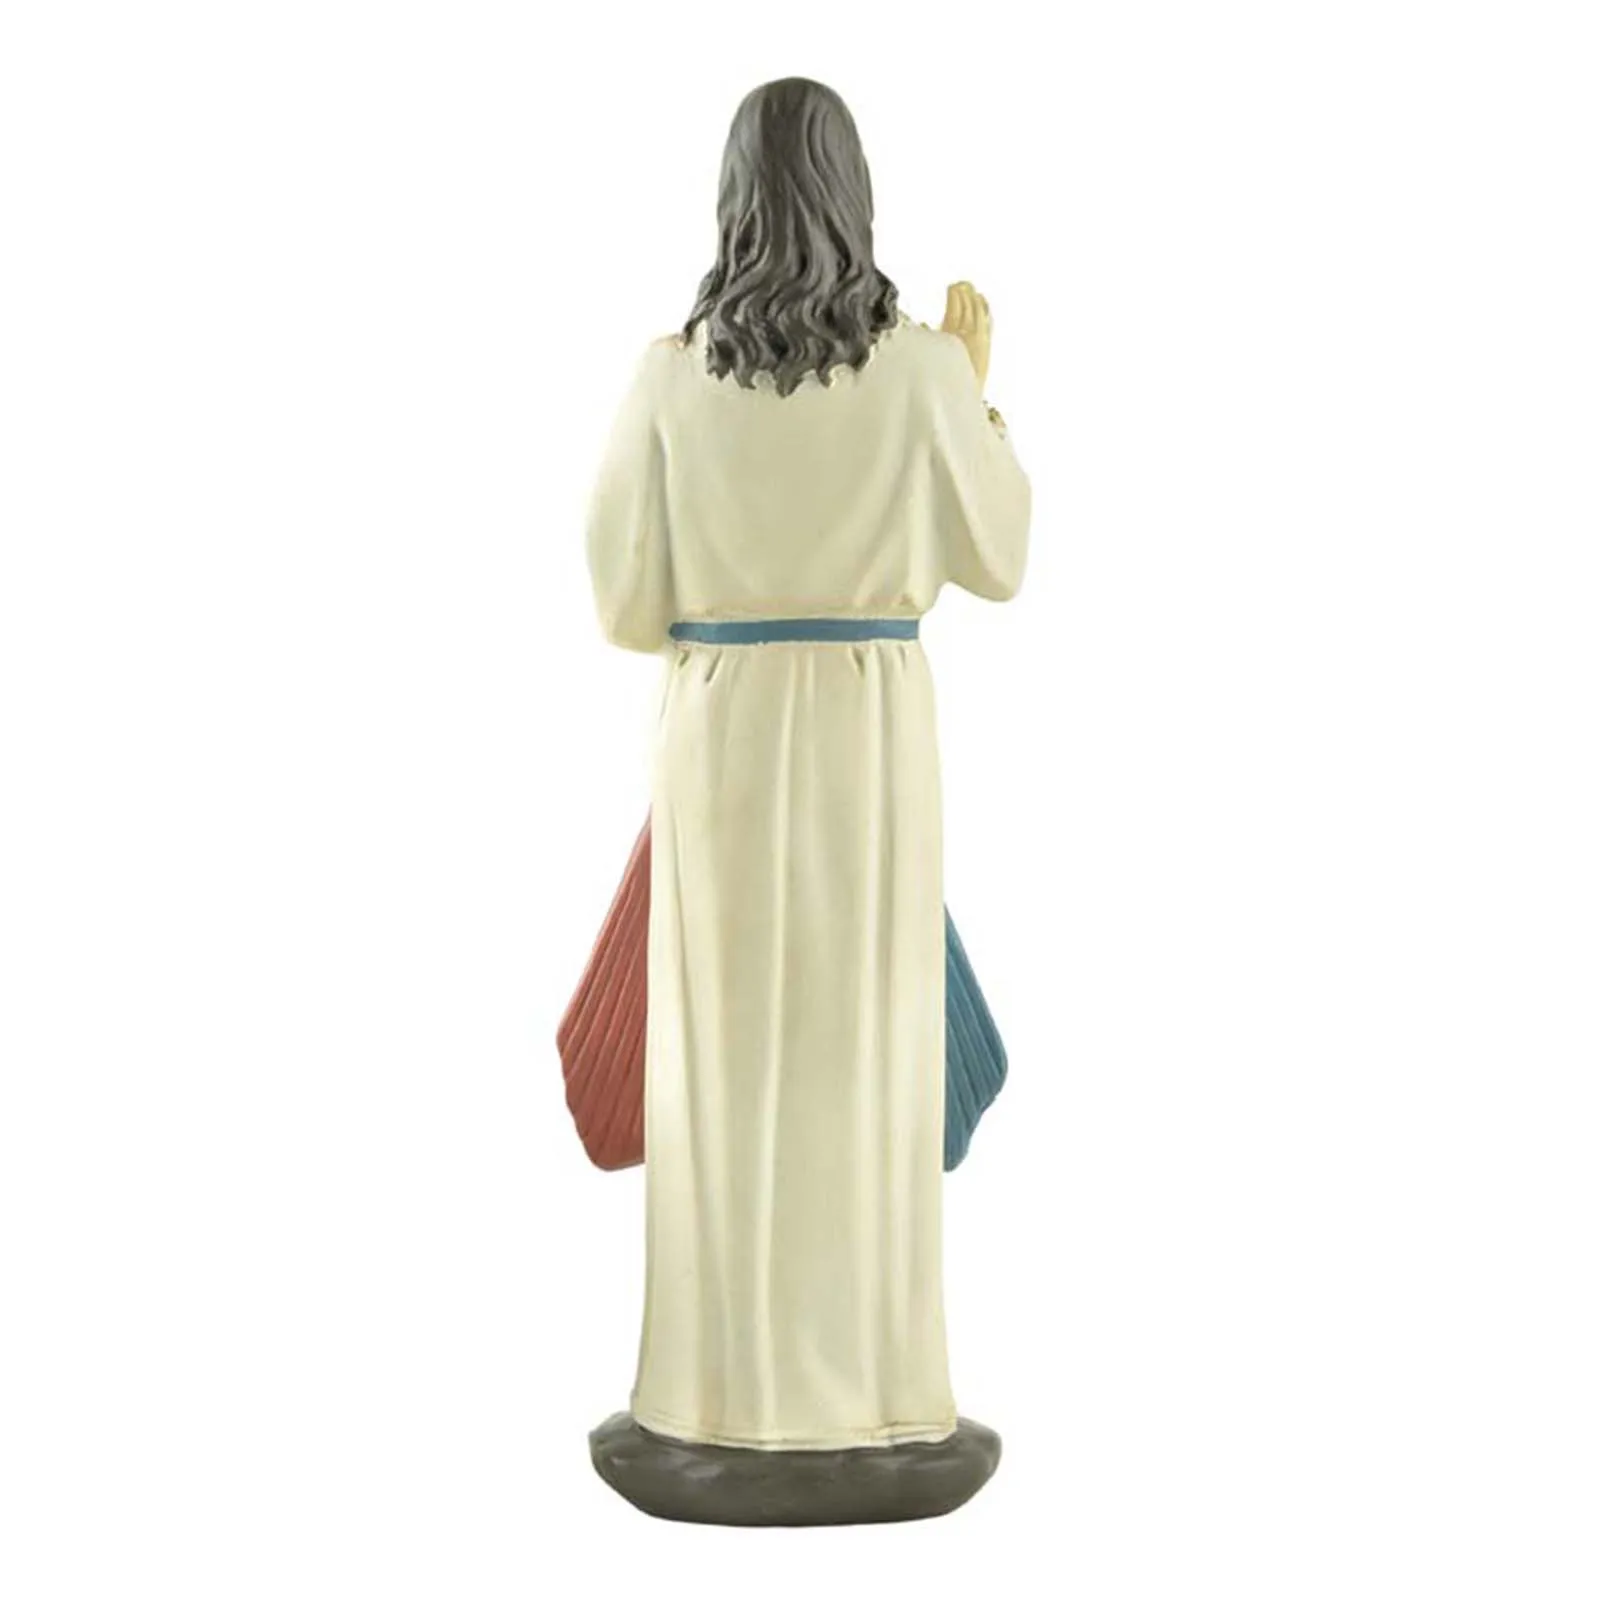 

Фигурка Бога из смолы статуэтка Иисуса Христа, декоративное украшение для дома